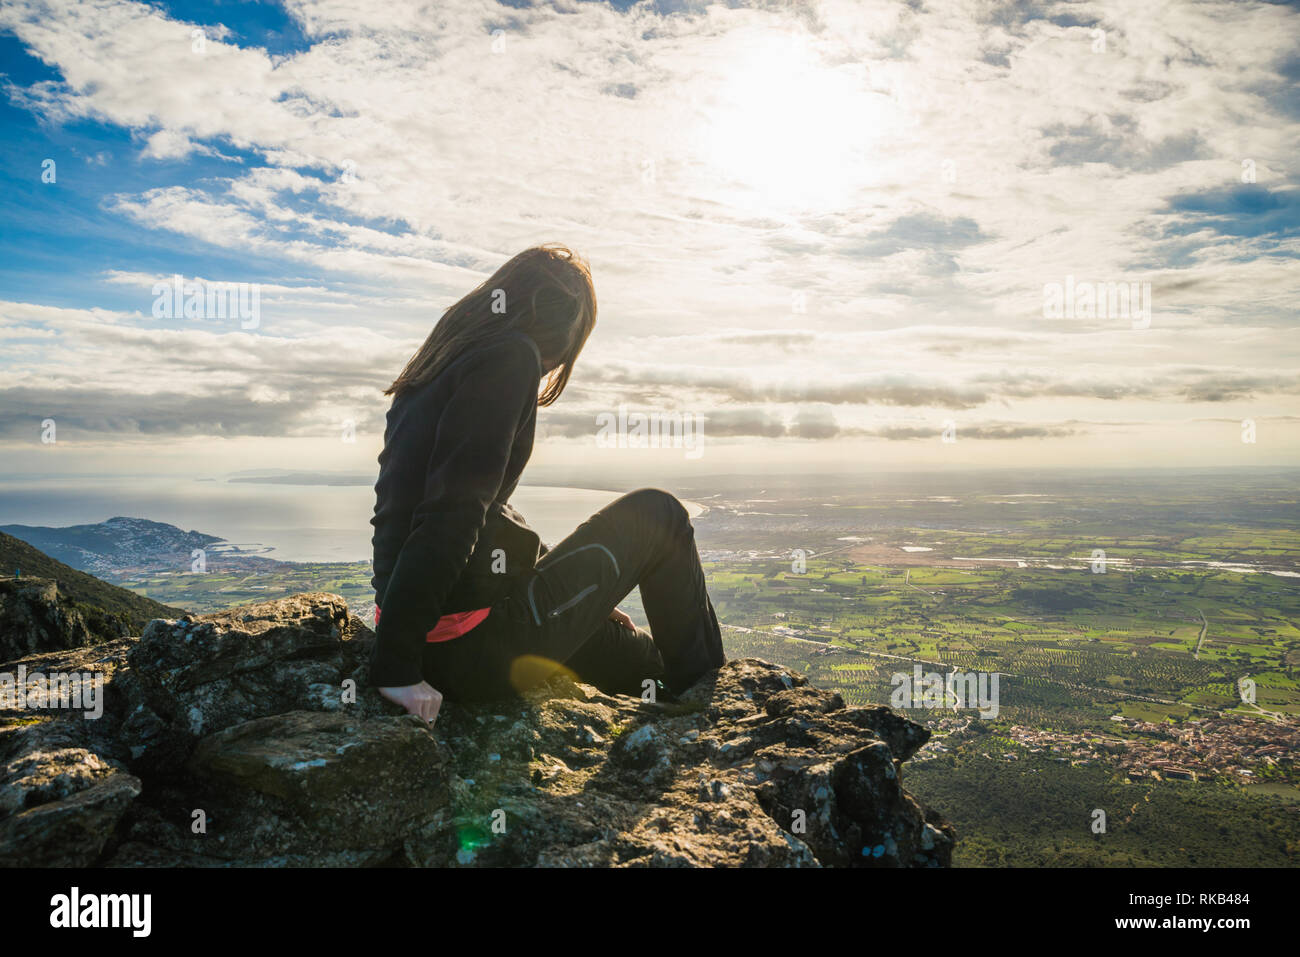 Ragazza seduta sul bordo di una scogliera ammirando lo splendido panorama, in mezzo alla natura, in Catalogna, Spagna Foto Stock